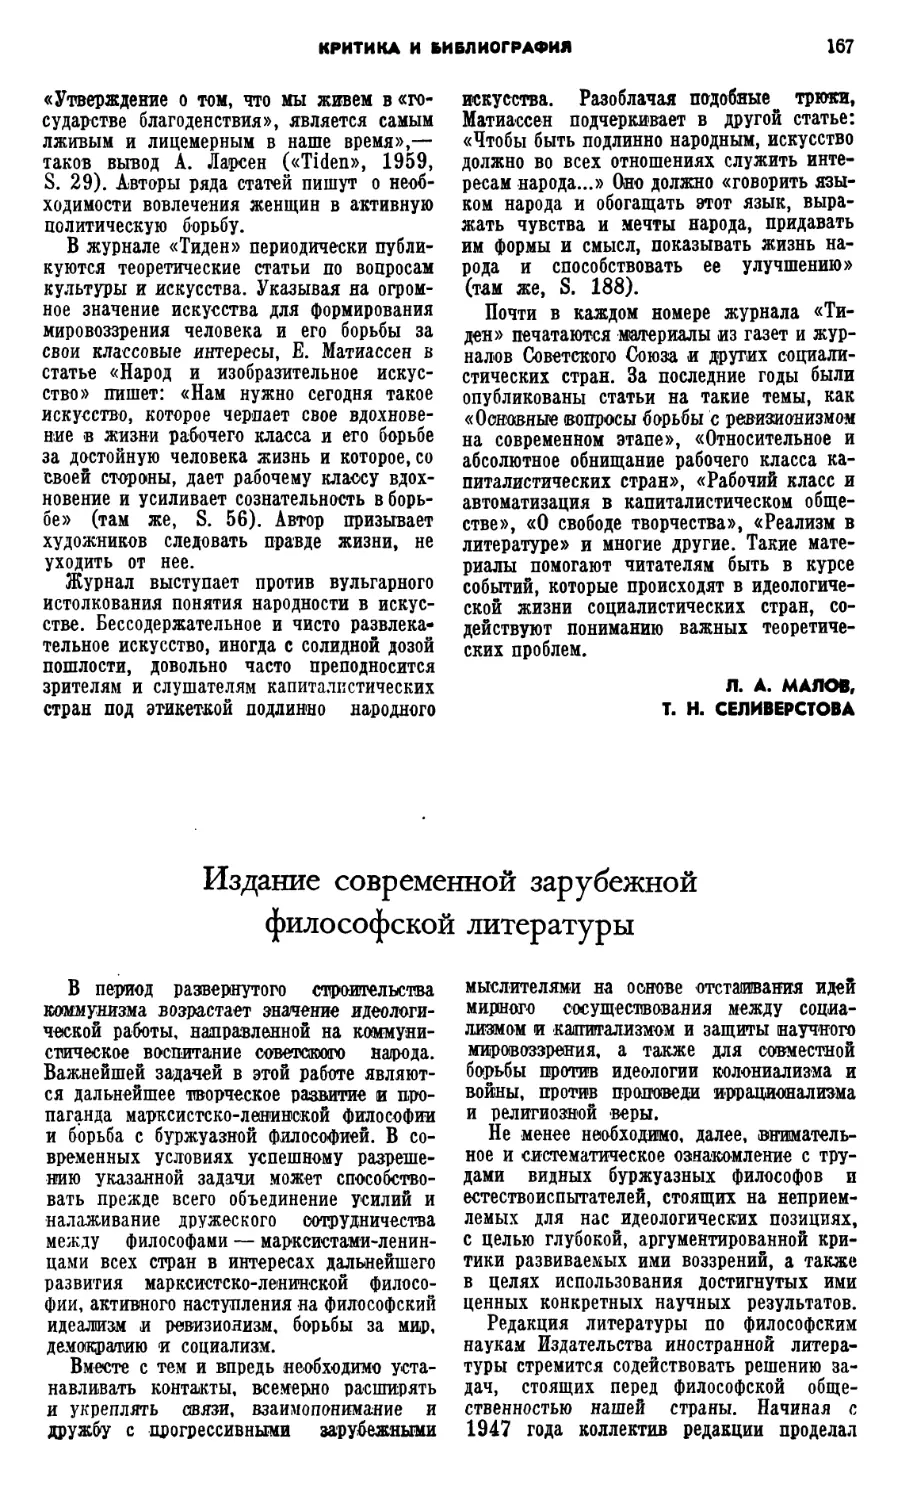 B.М. Леонтьев – Издание современной зарубежной философской литературы